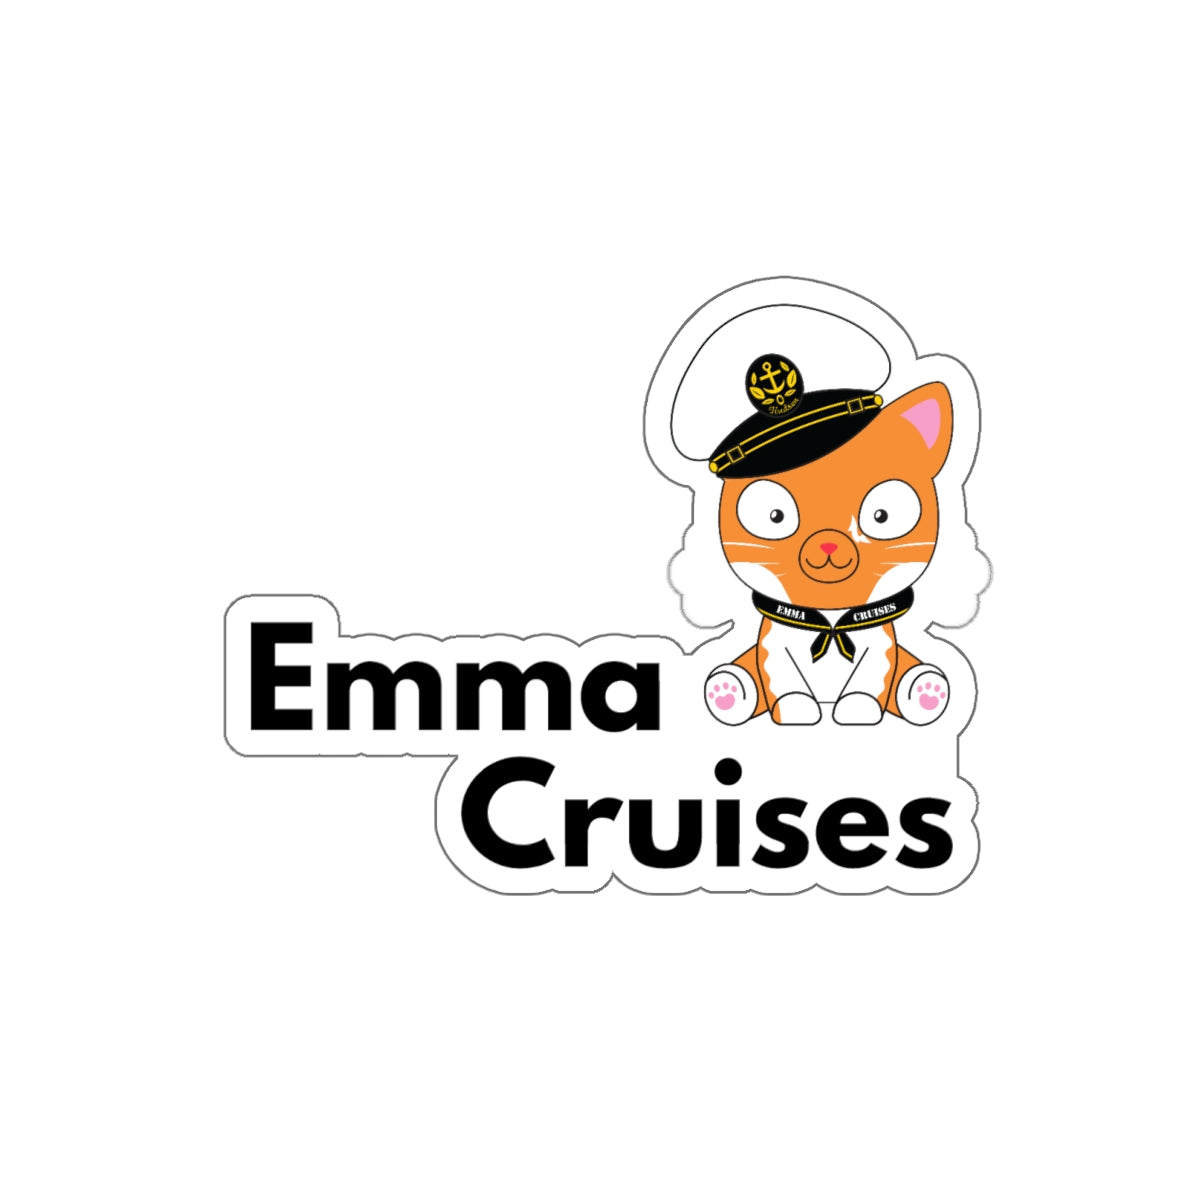 Emma Cruises - Die-Cut Sticker